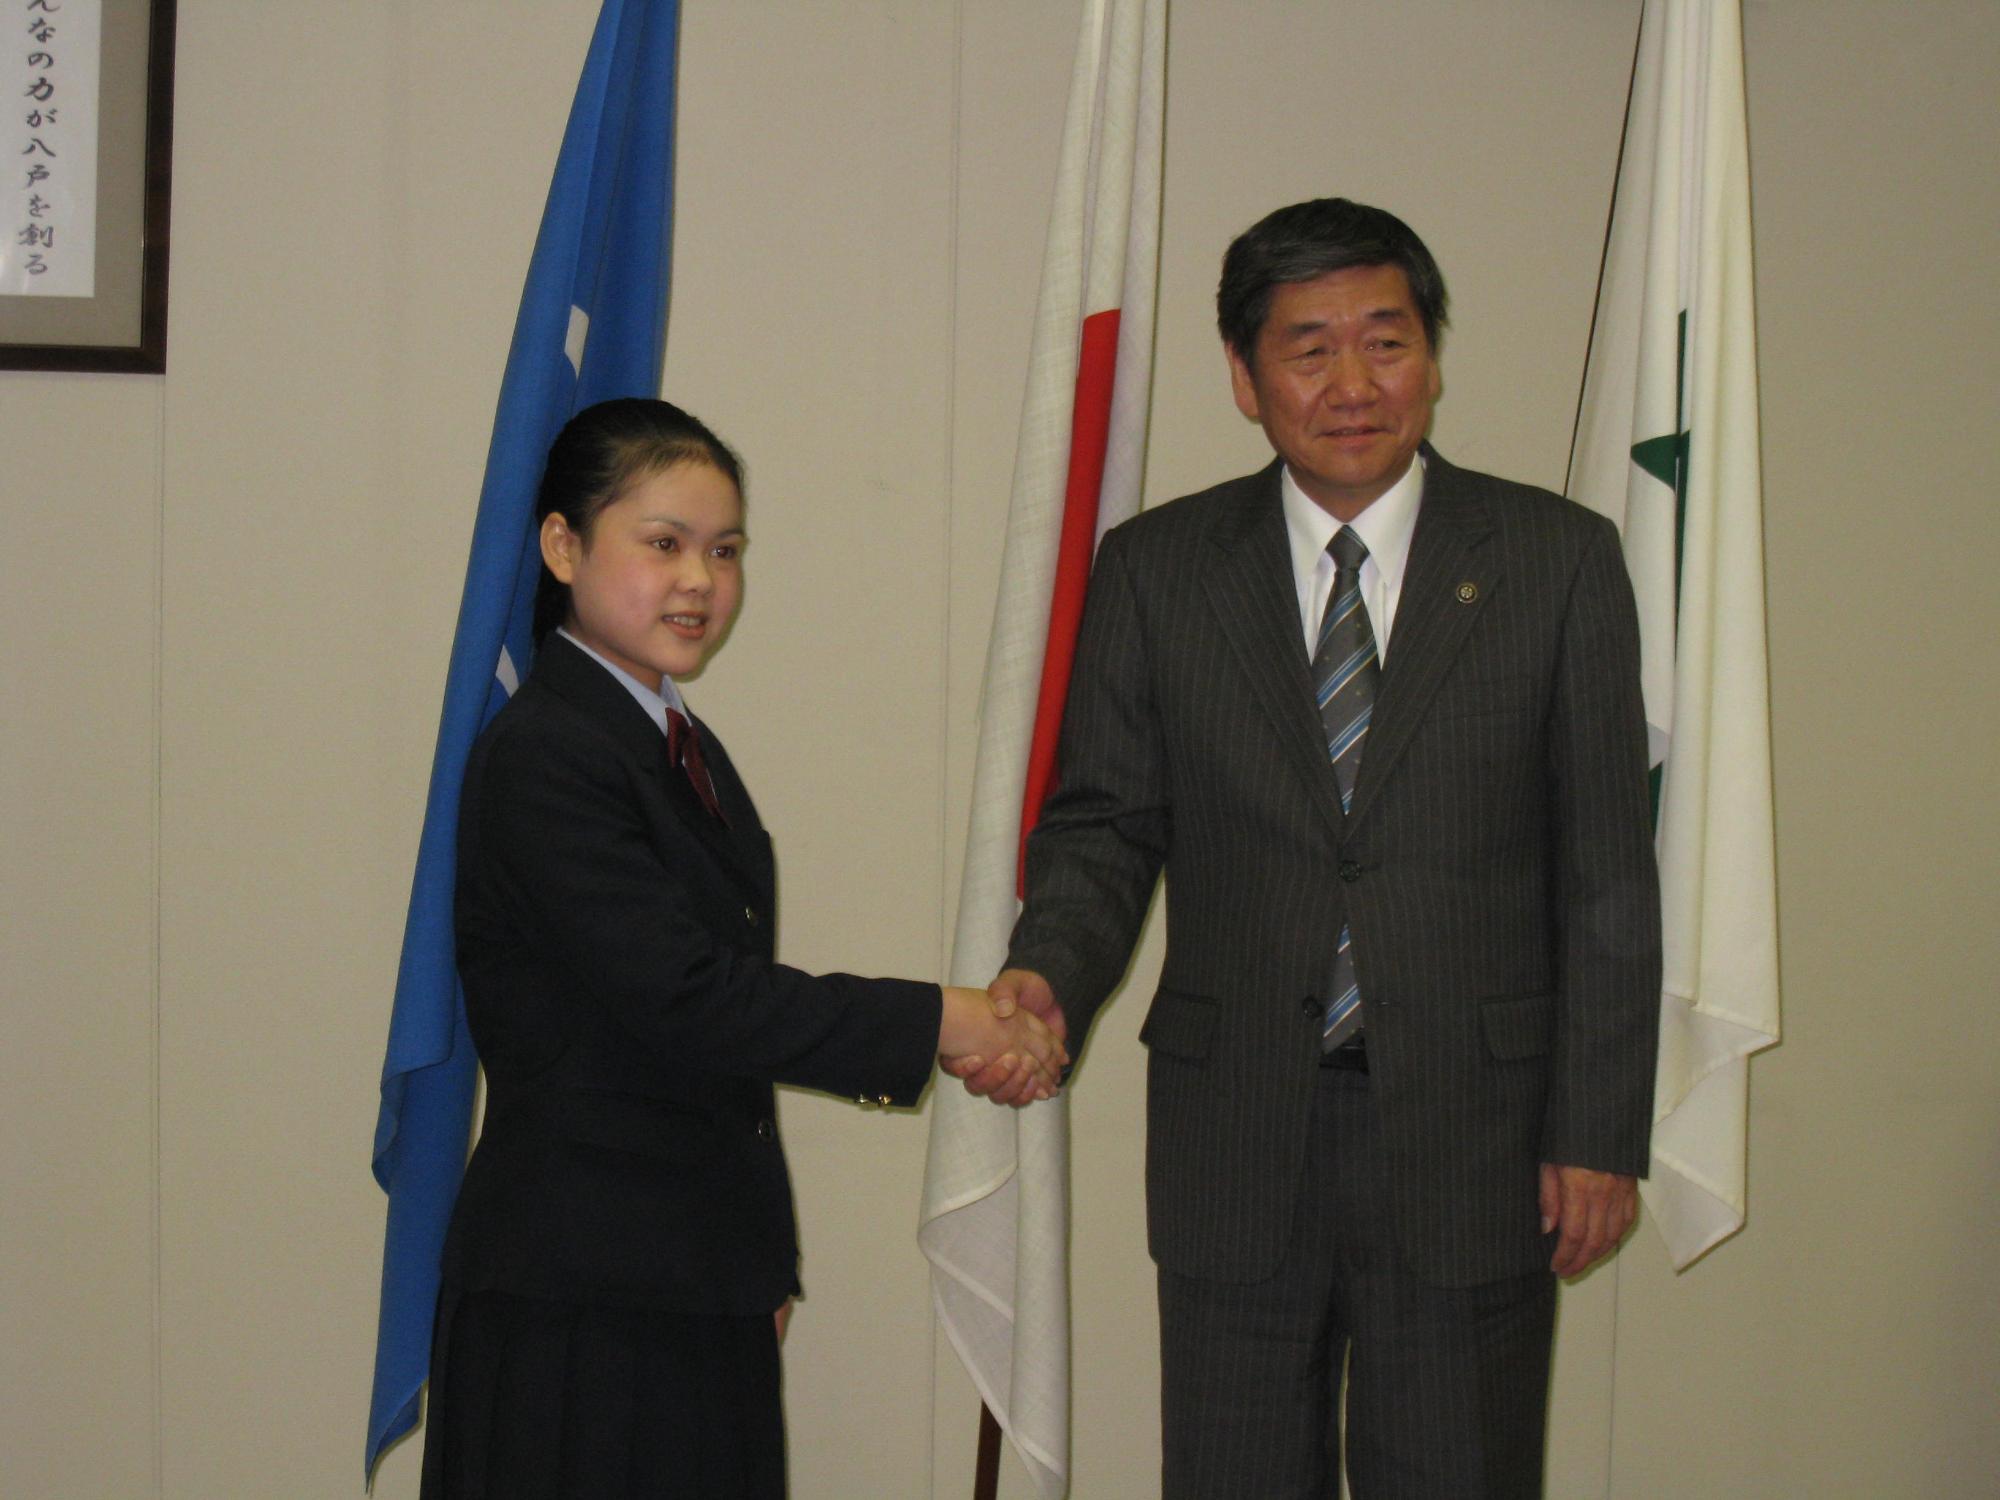 タン・チェンターさん 小林市長に表敬訪問し、握手している写真